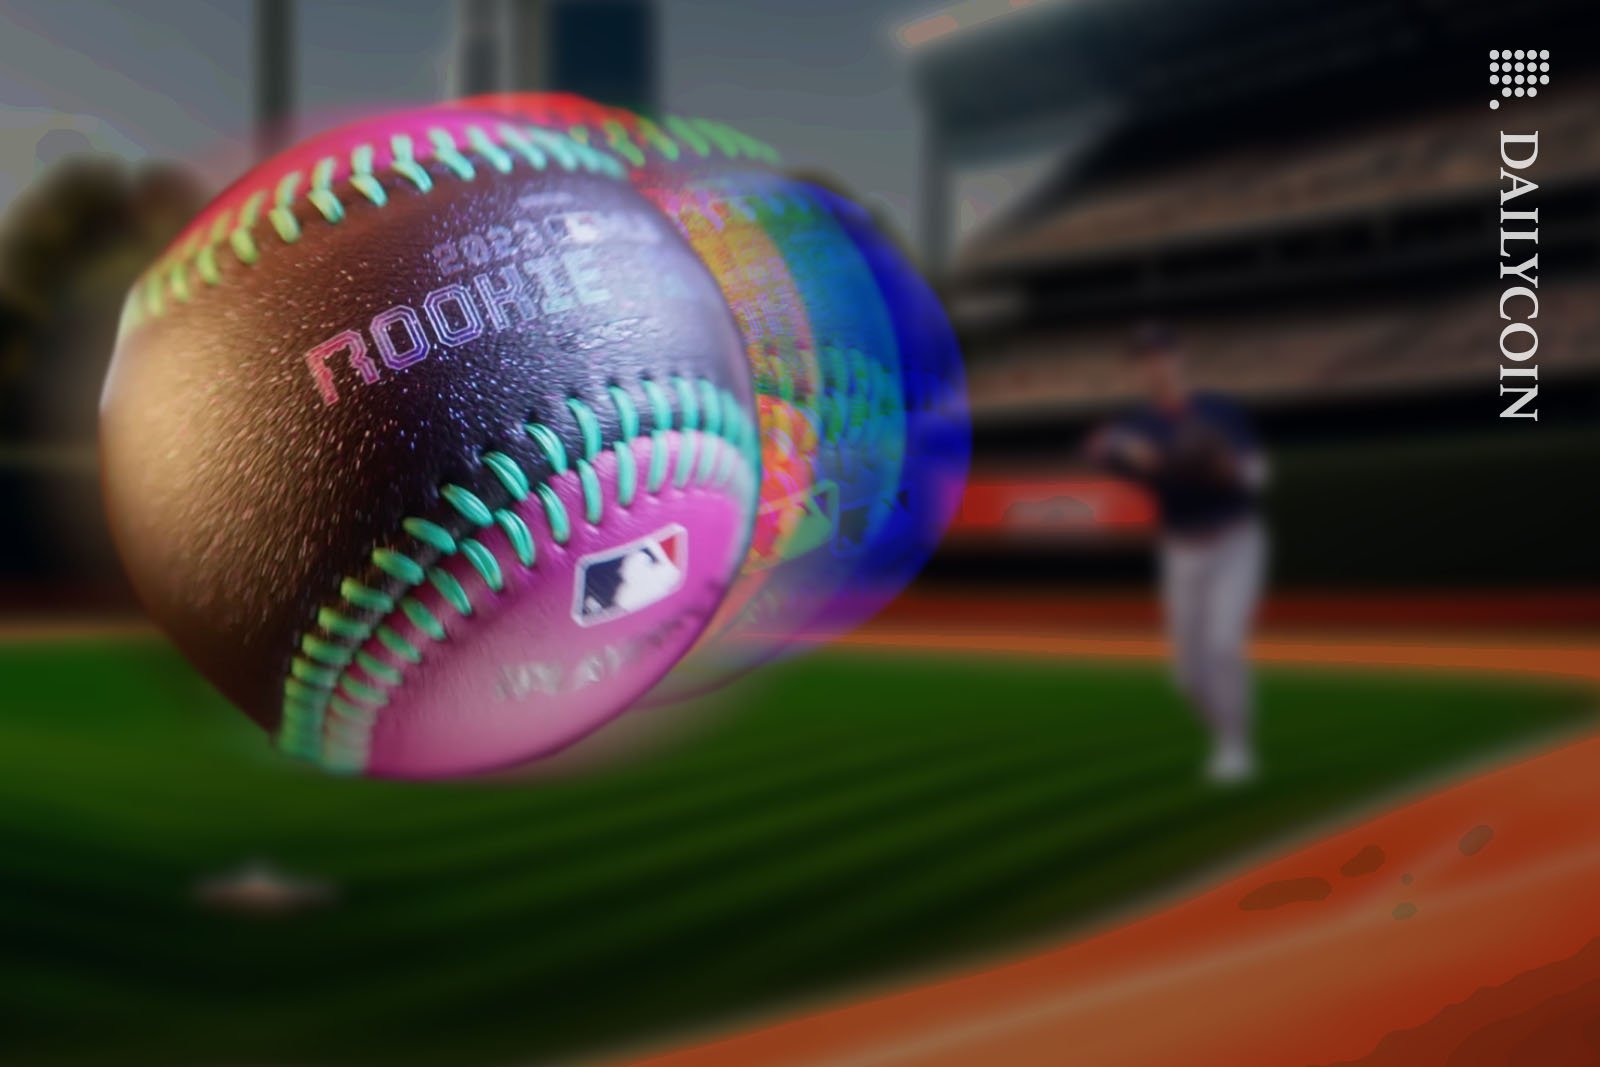 Baseball player throws a ball towards the camera.